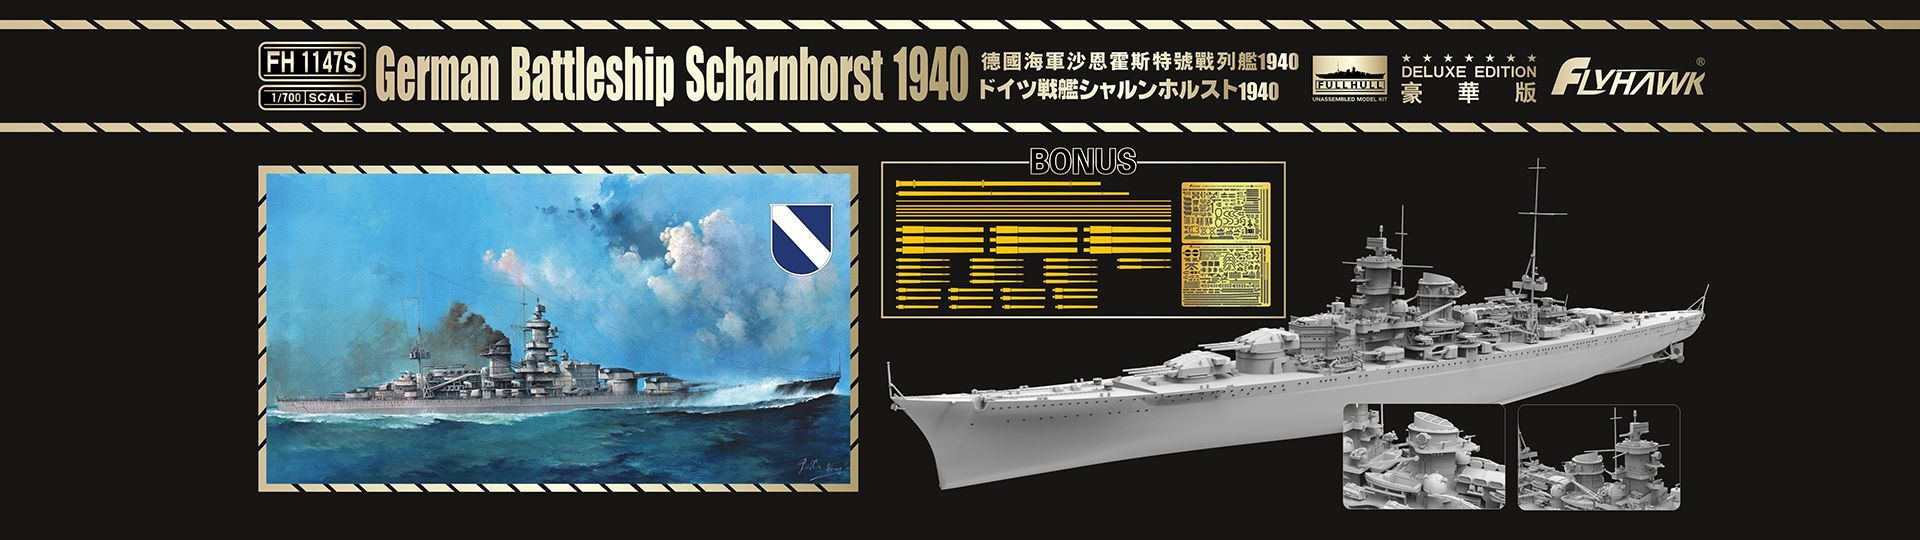 フライホーク[FLYFH1147S]1/700 戦艦シャルンホルスト1940豪華版